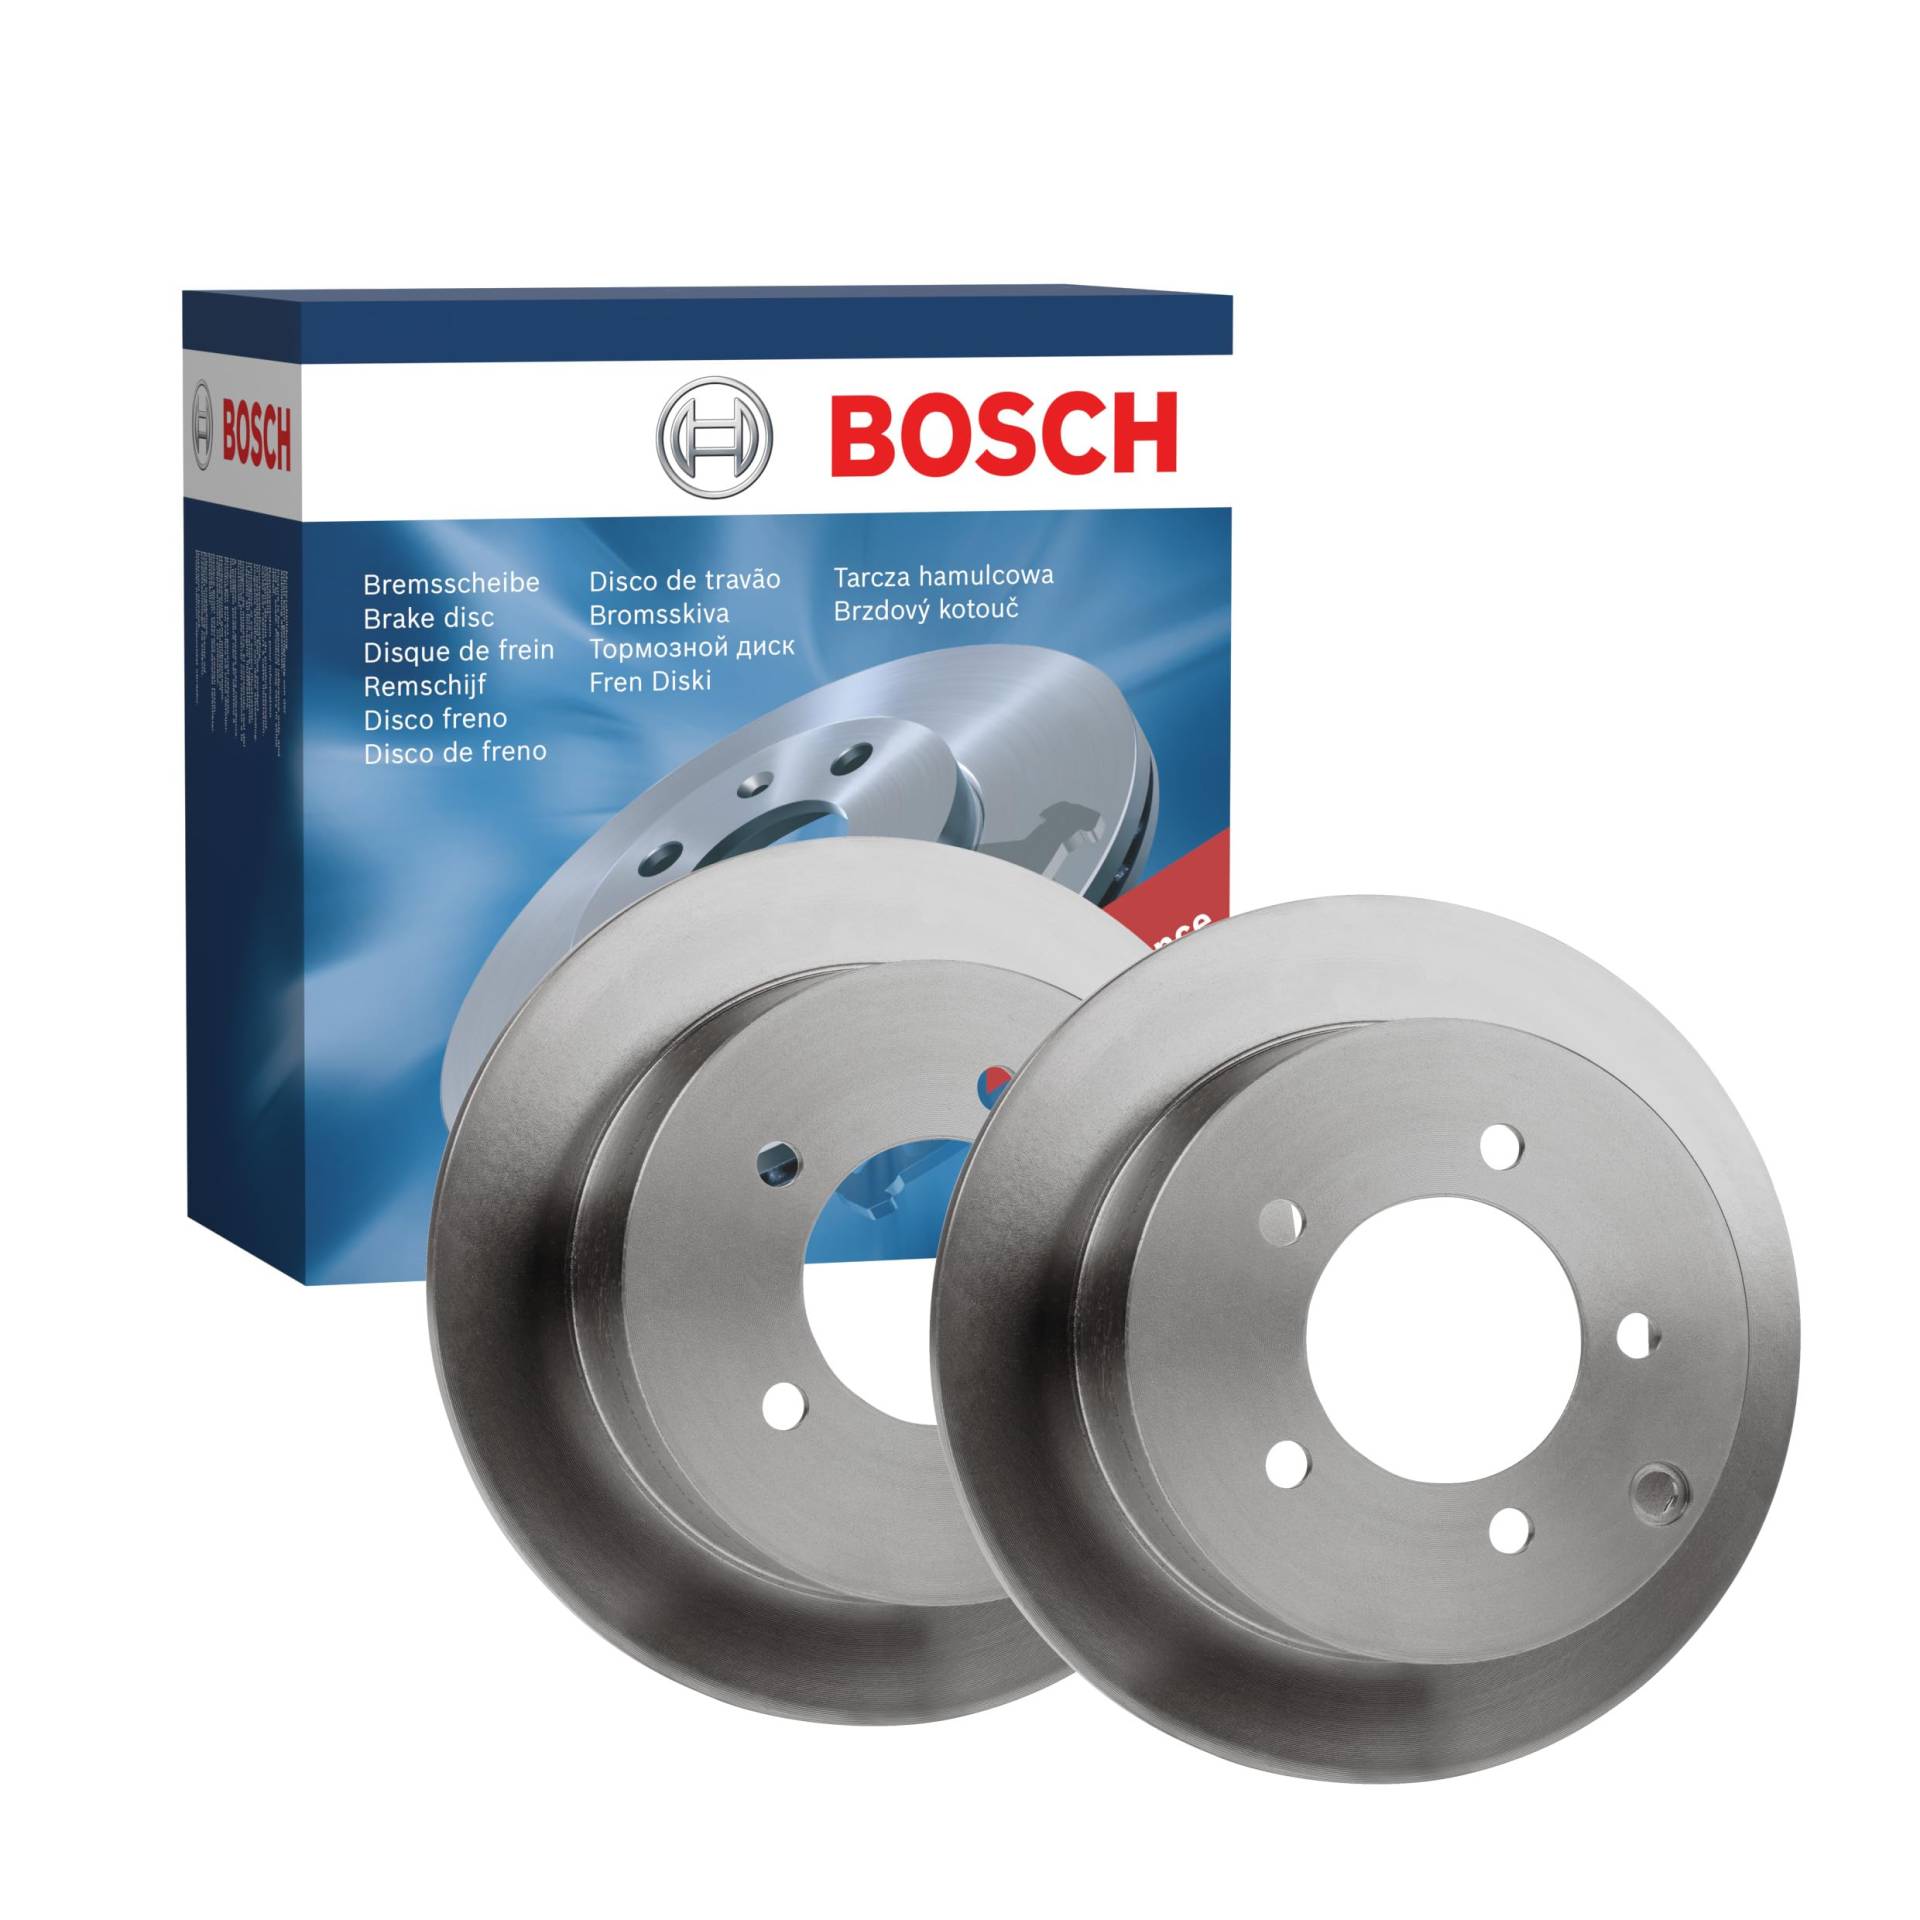 Bosch BD1728 Bremsscheiben - Hinterachse - ECE-R90 Zertifizierung - zwei Bremsscheiben pro Set von Bosch Automotive